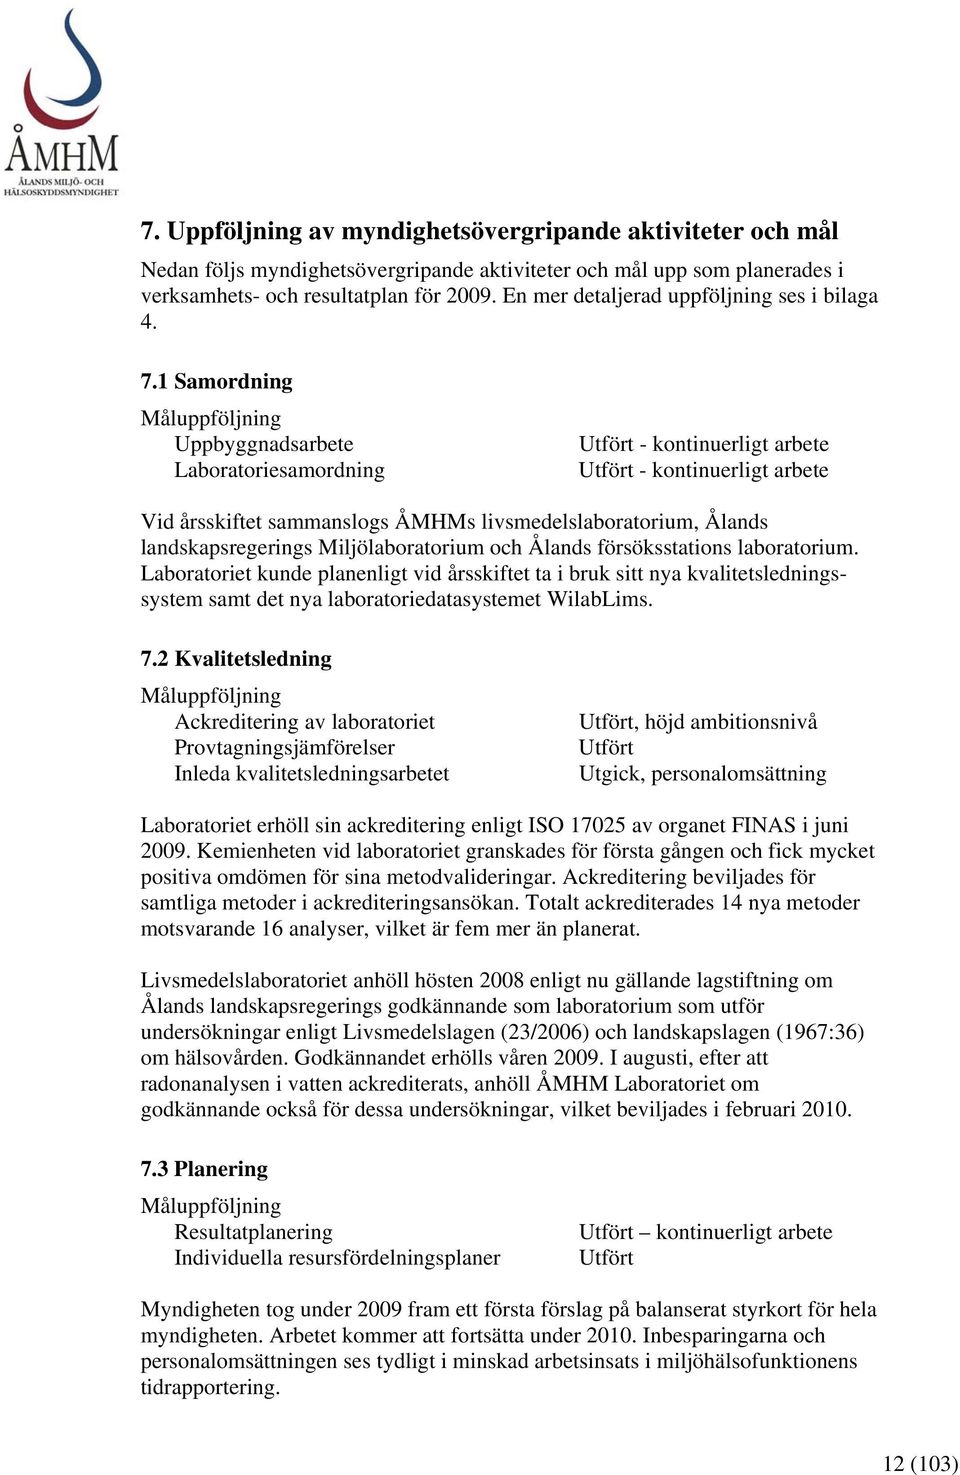 1 Samordning Måluppföljning Uppbyggnadsarbete Laboratoriesamordning Utfört - kontinuerligt arbete Utfört - kontinuerligt arbete Vid årsskiftet sammanslogs ÅMHMs livsmedelslaboratorium, Ålands